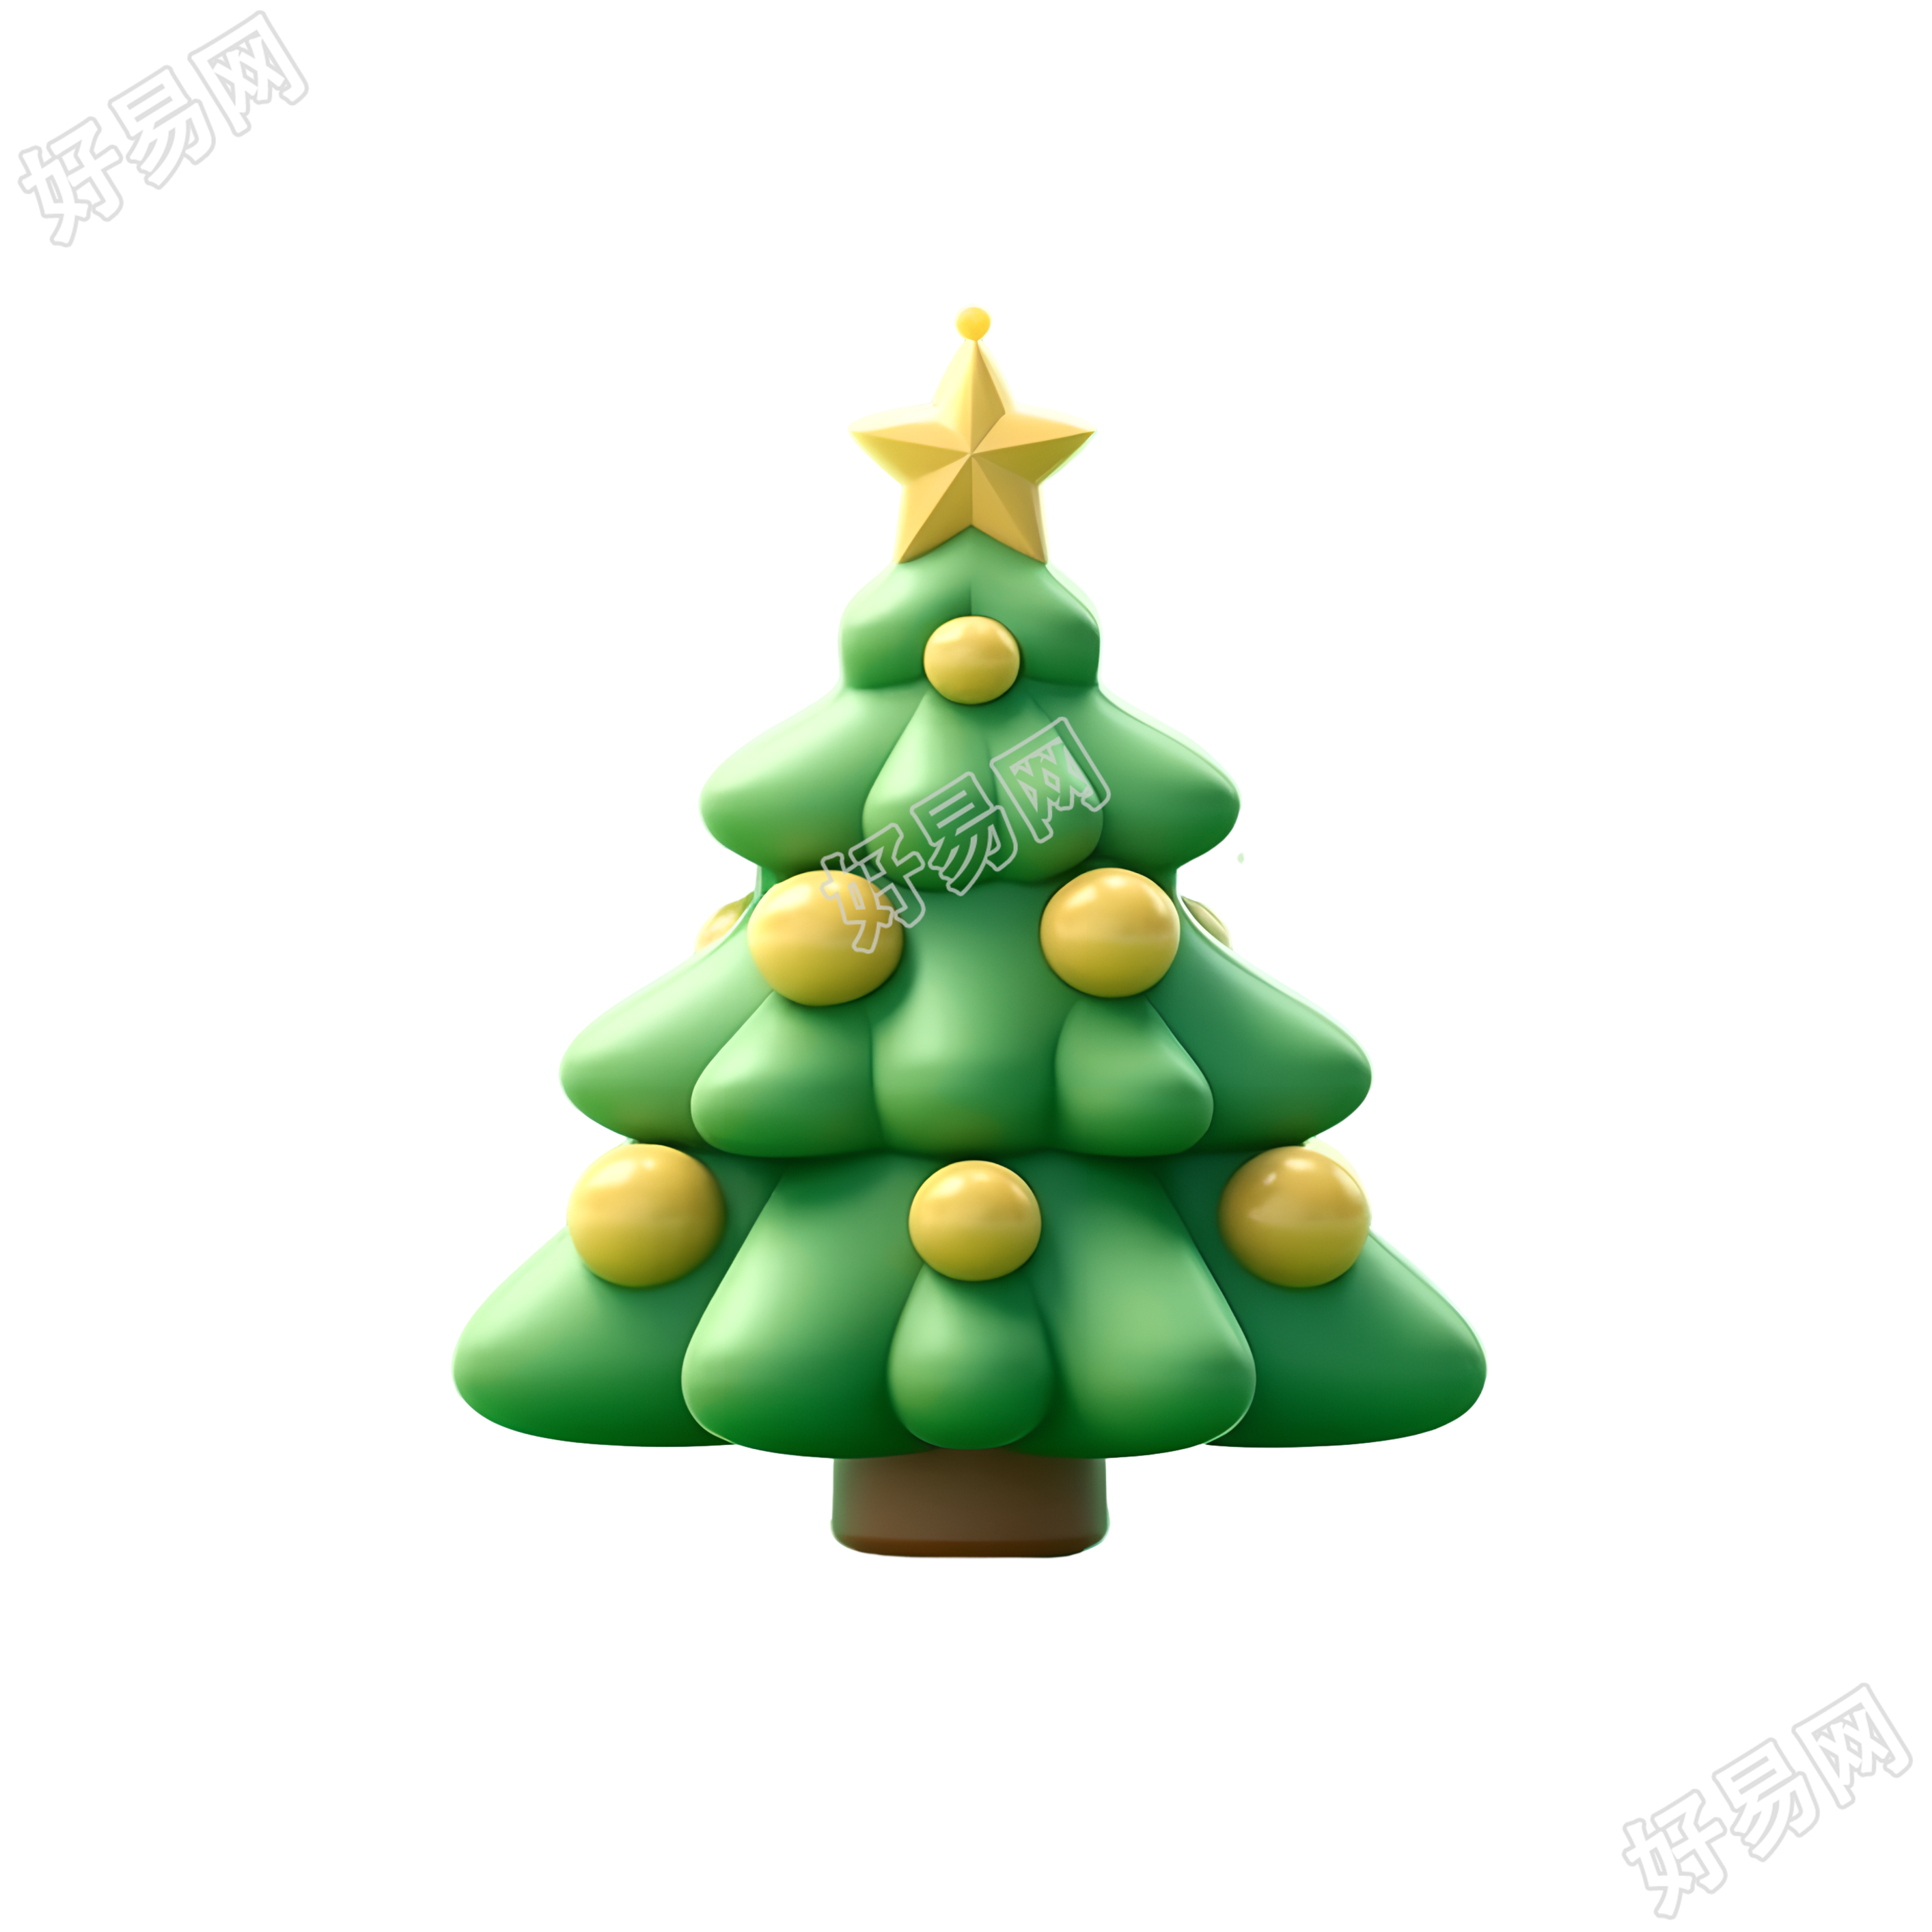 圣诞树可商用的3D粘土材质素材